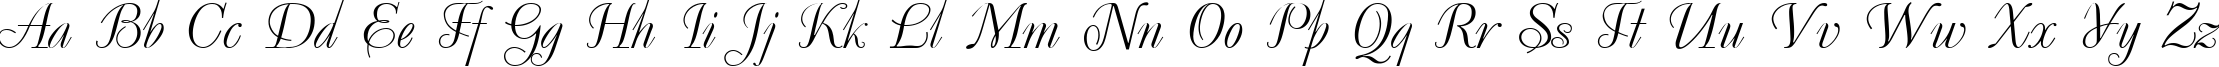 Пример написания английского алфавита шрифтом Decor Cyrillic